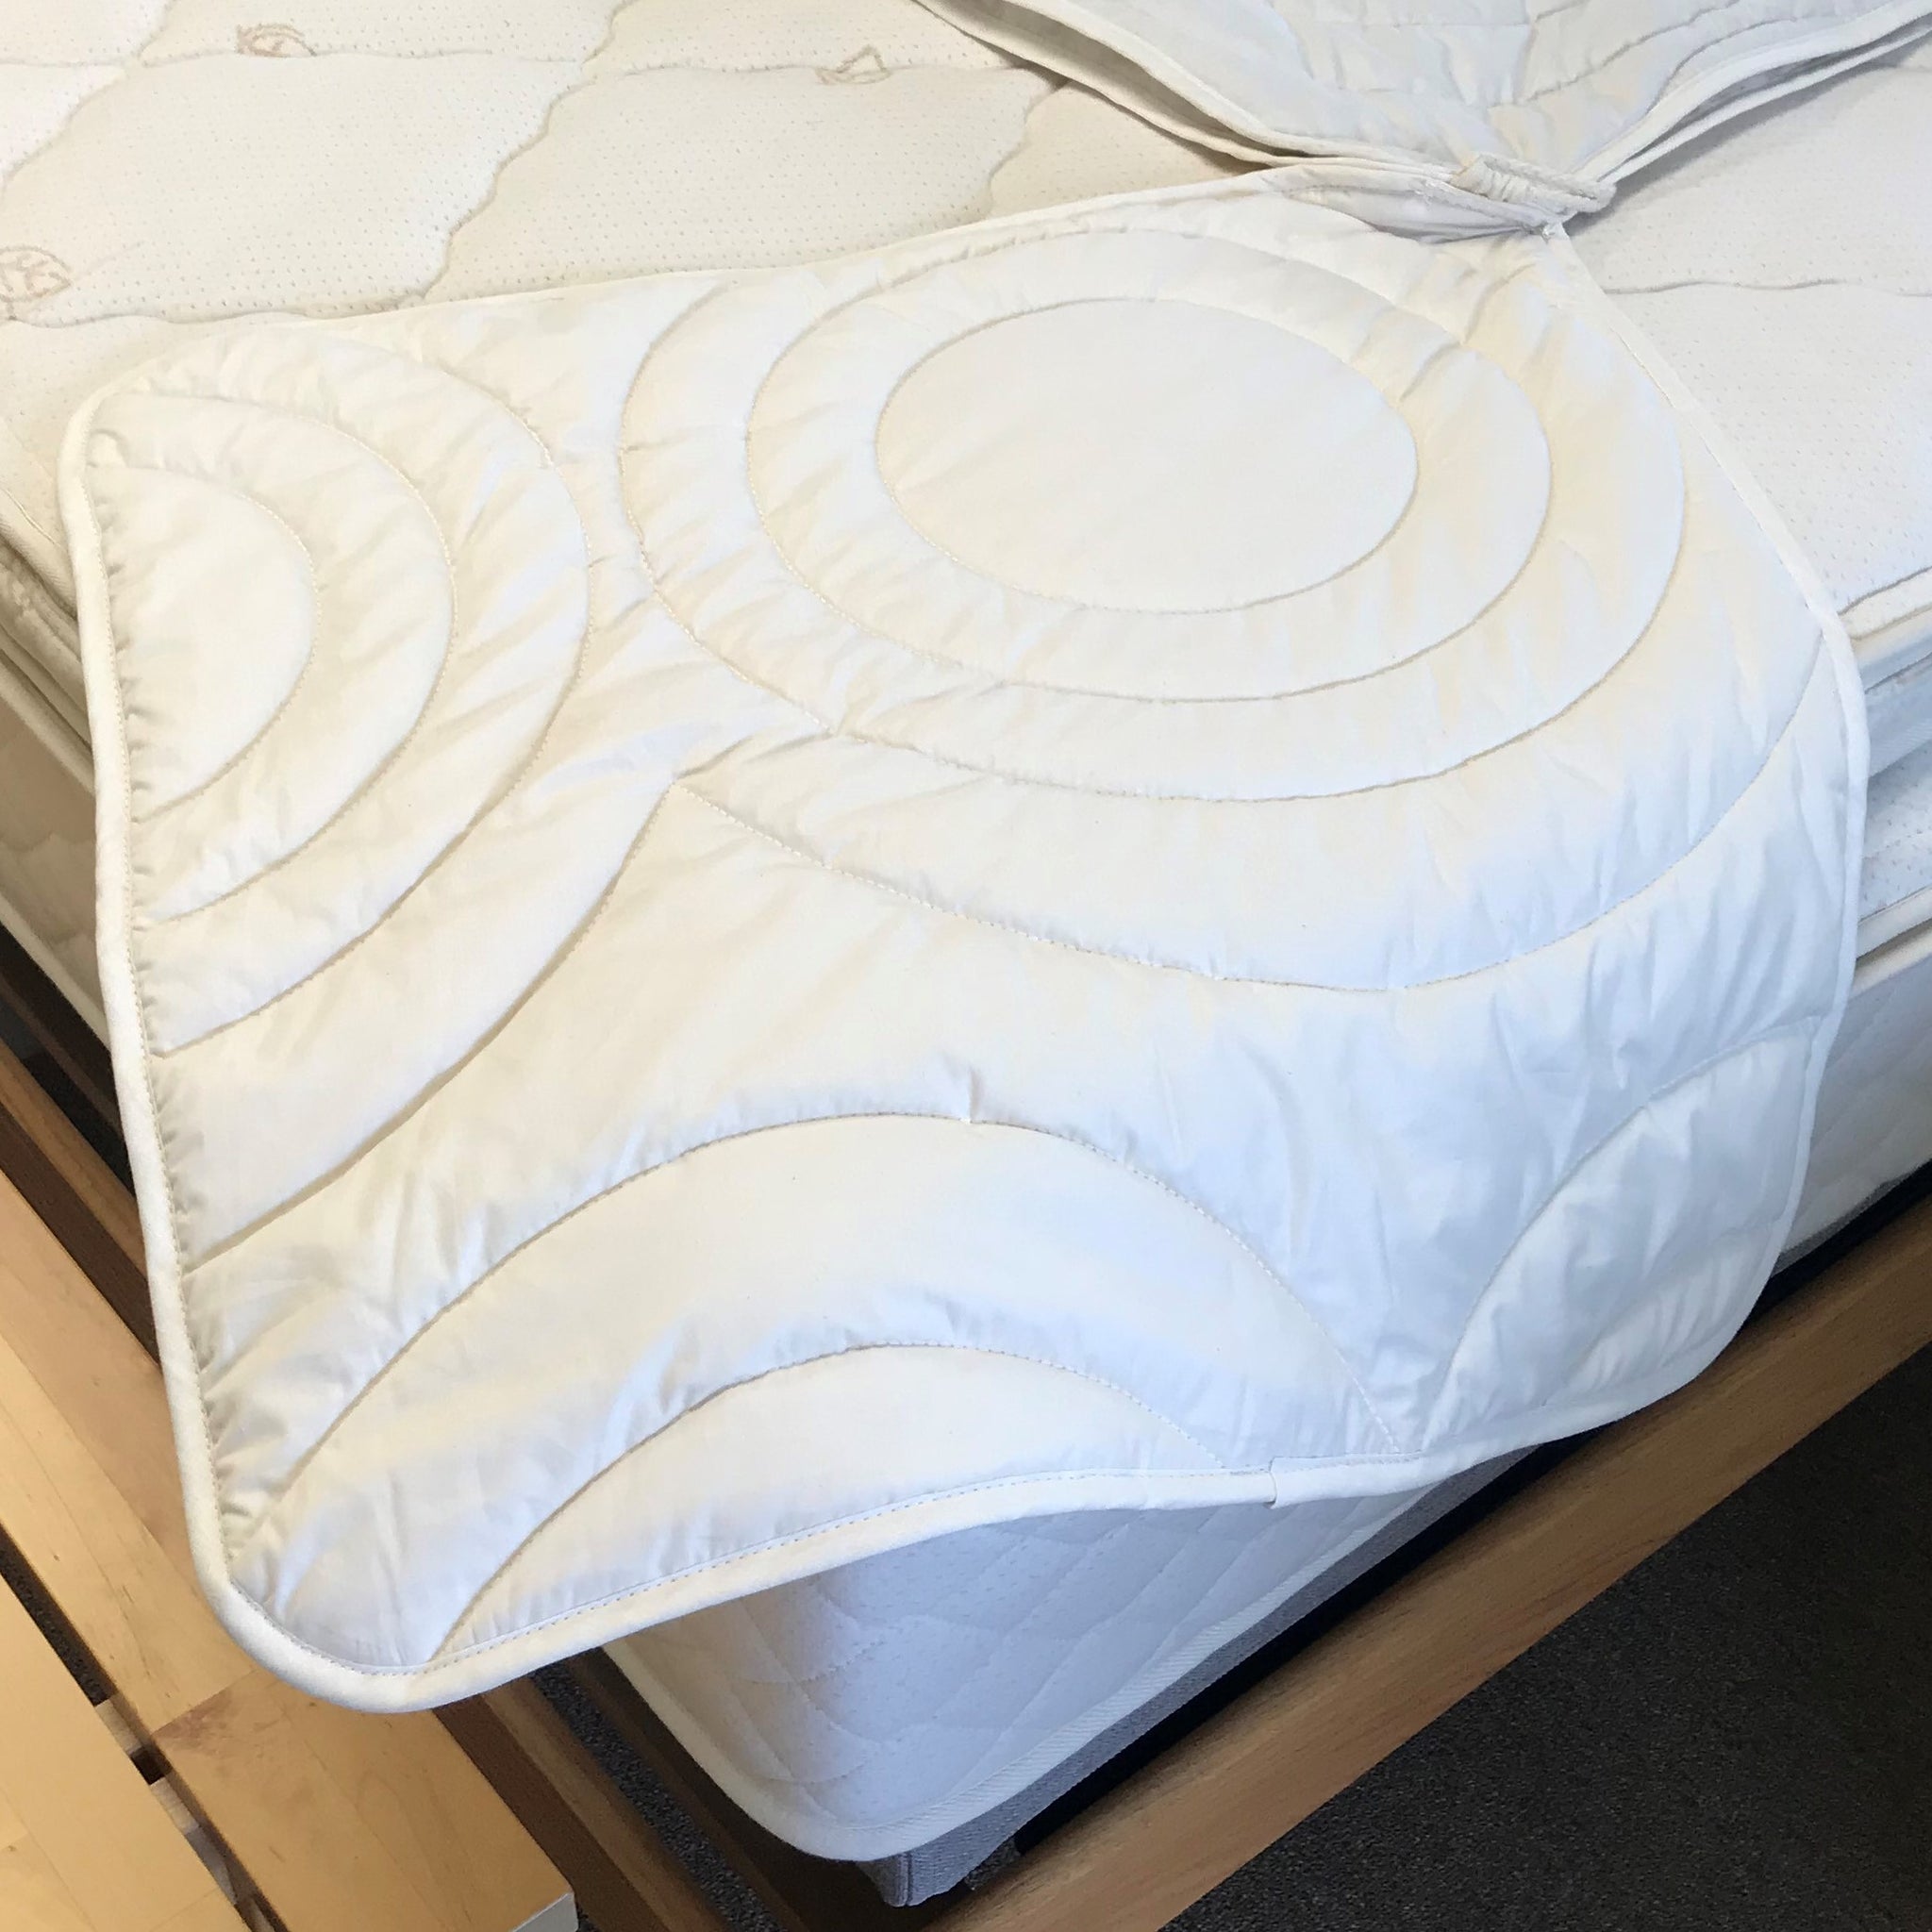 Berkeley Ergonomics Comforter - Wool - The Organic Bedroom